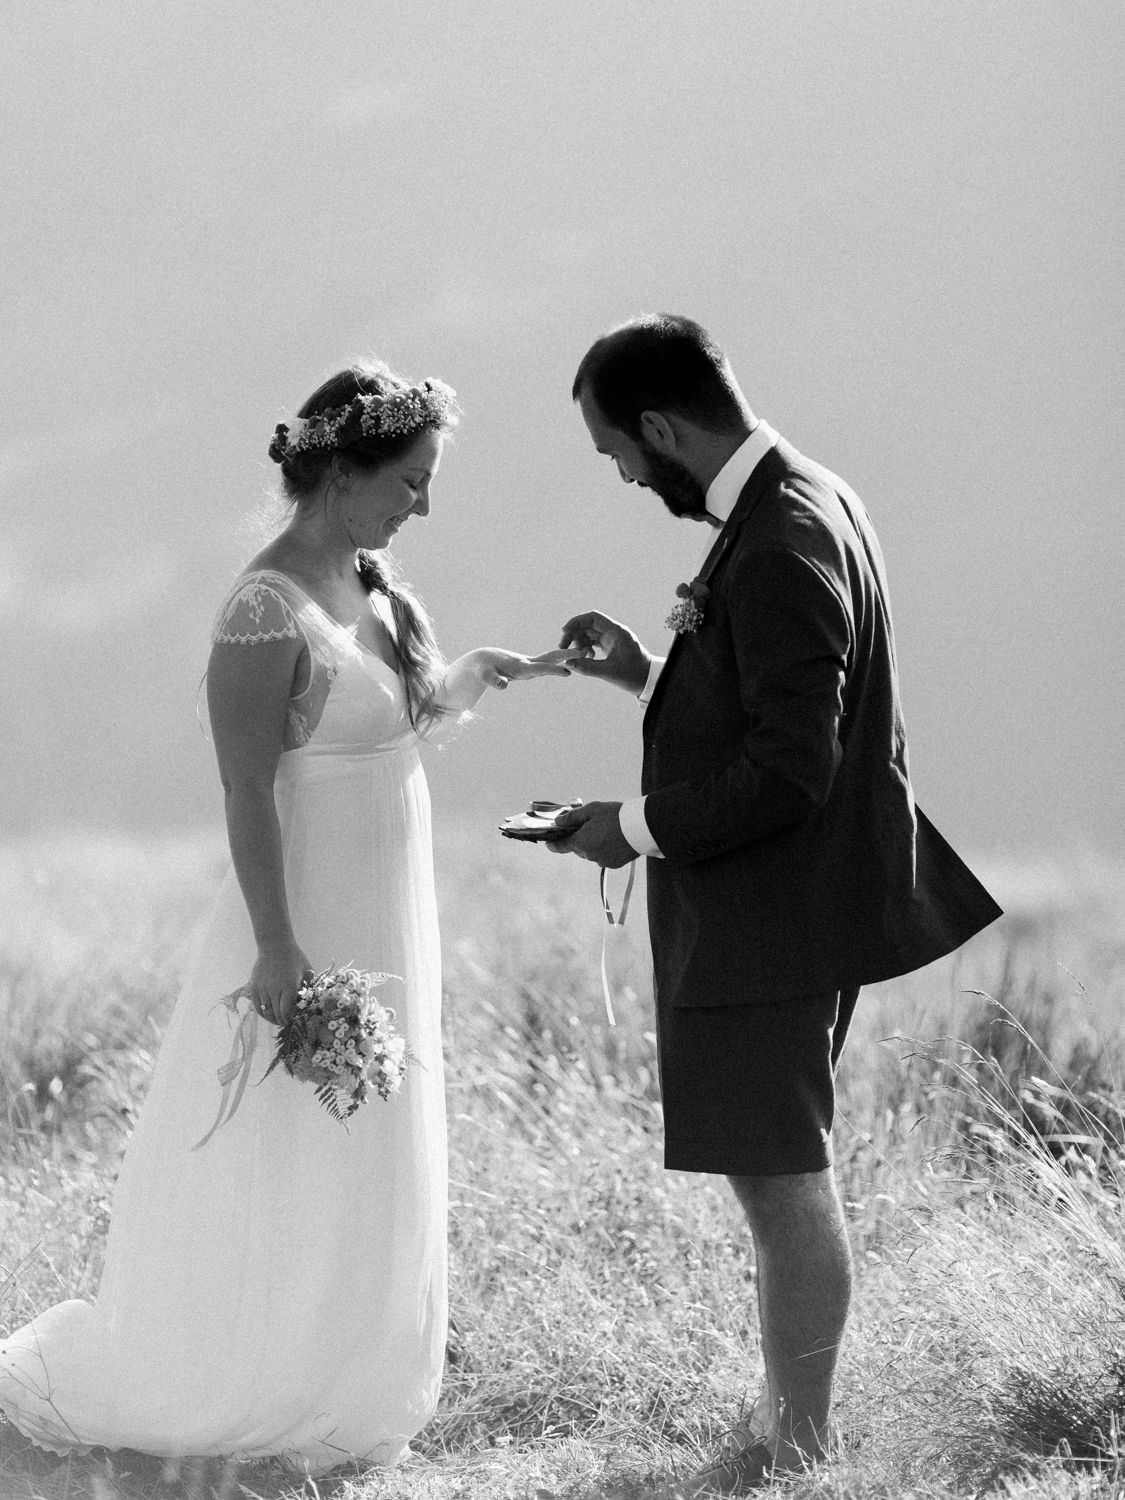 capyture-wedding-photographer-destination-elopement-switzerland-67